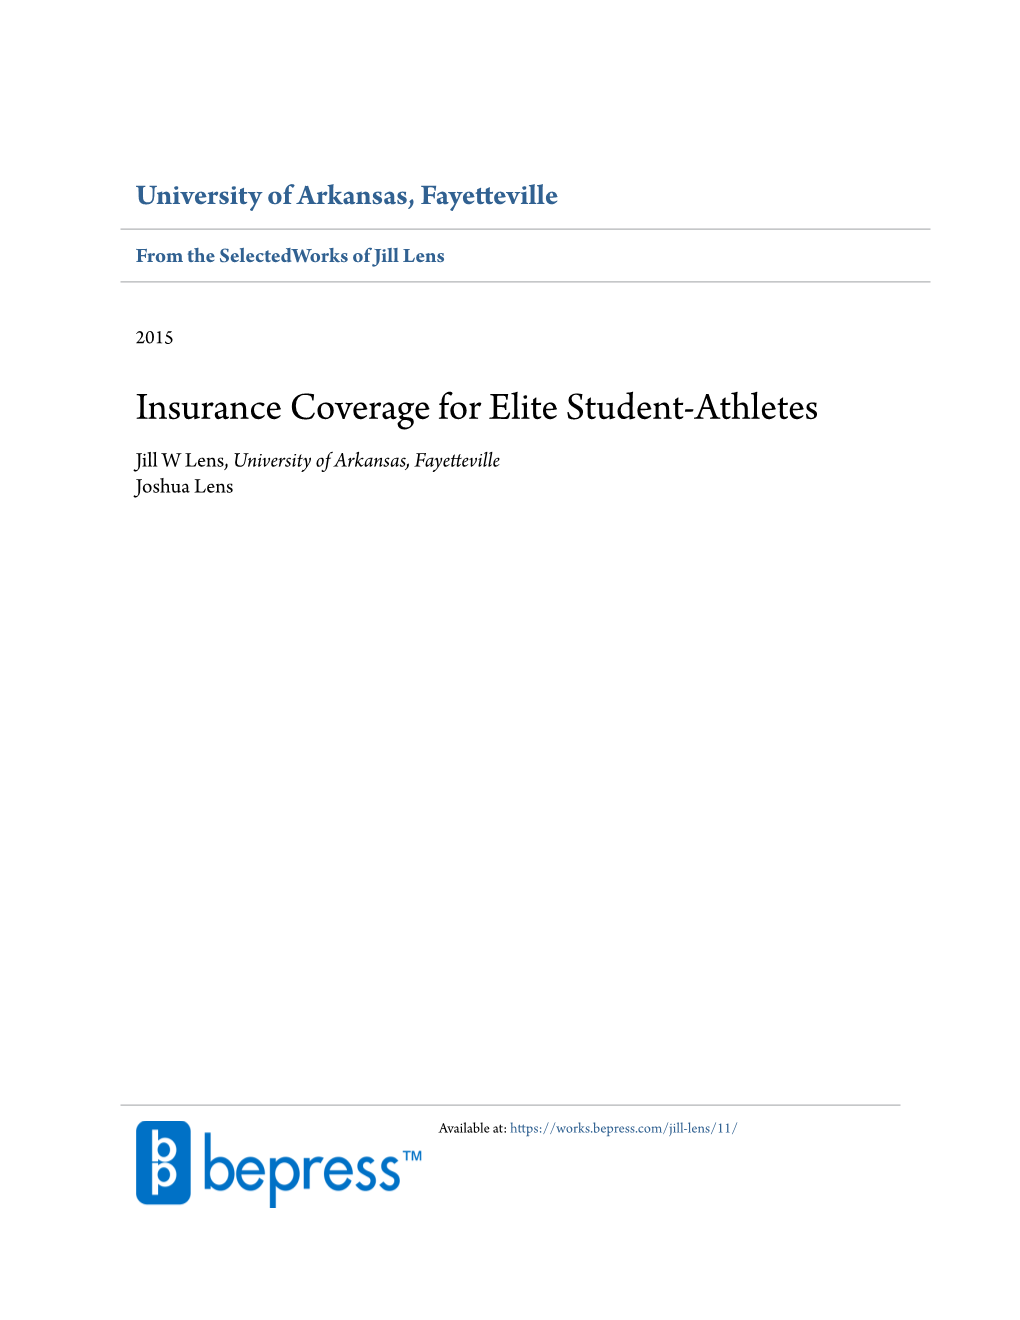 Insurance Coverage for Elite Student-Athletes Jill W Lens, University of Arkansas, Fayetteville Joshua Lens